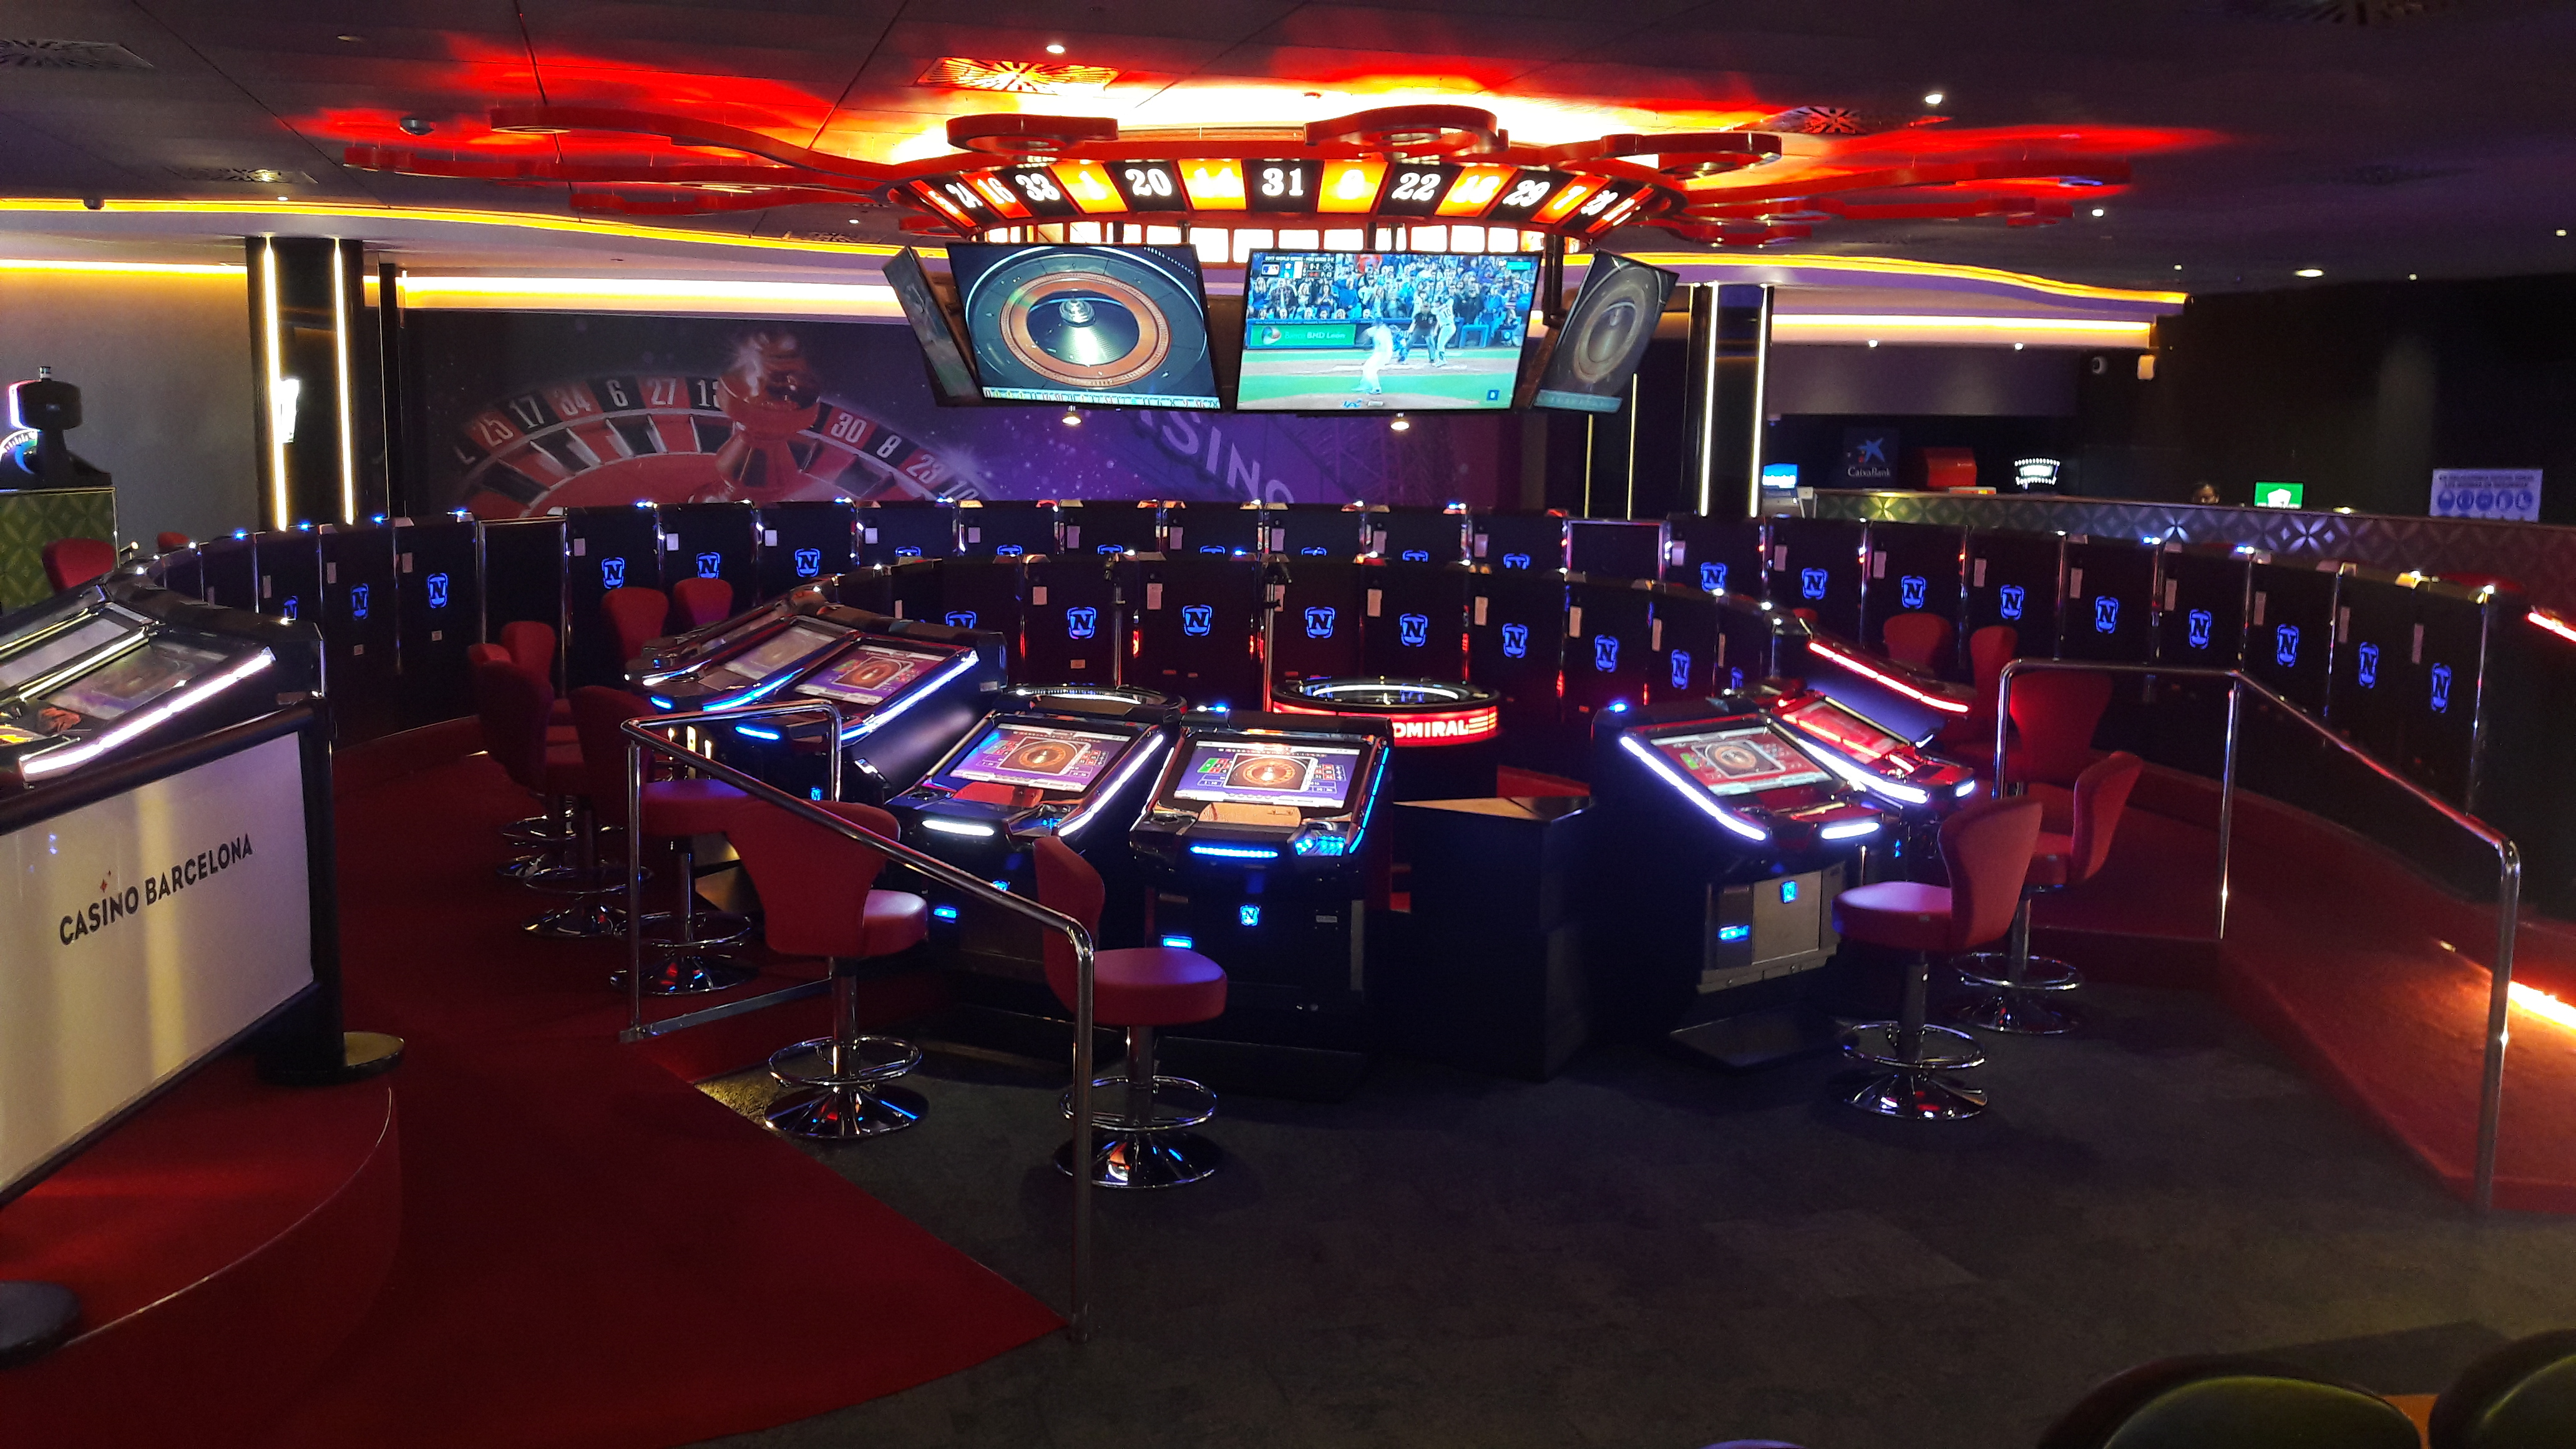 Casino Barcelona amplía su oferta de ruleta electrónica con 24 nuevos terminales FV880 Novostar® SL1 de Novomatic